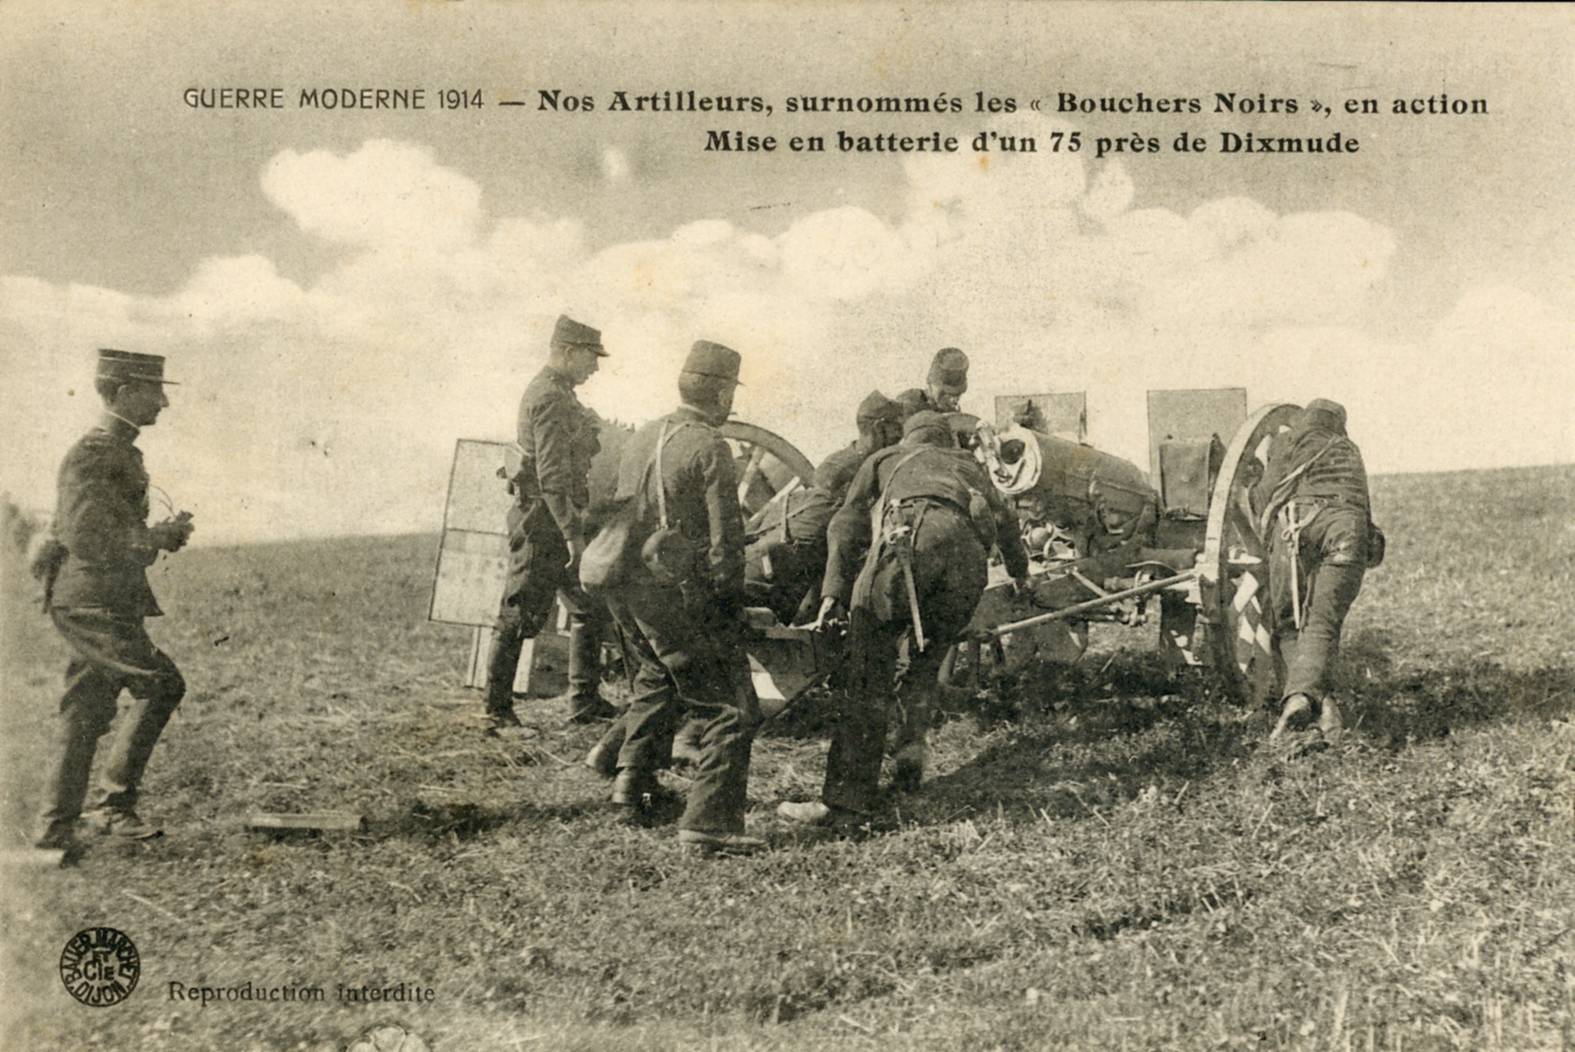 Guerre moderne 1914: Nos Artilleurs surnommés les "Bouchers Noirs" en action - Mise en batterie d'un 75 près de Dixmude.-- Photo Bauer-Marchet (1914) © Archives 61ème RA Photo Bauer-Marchet (1914). -